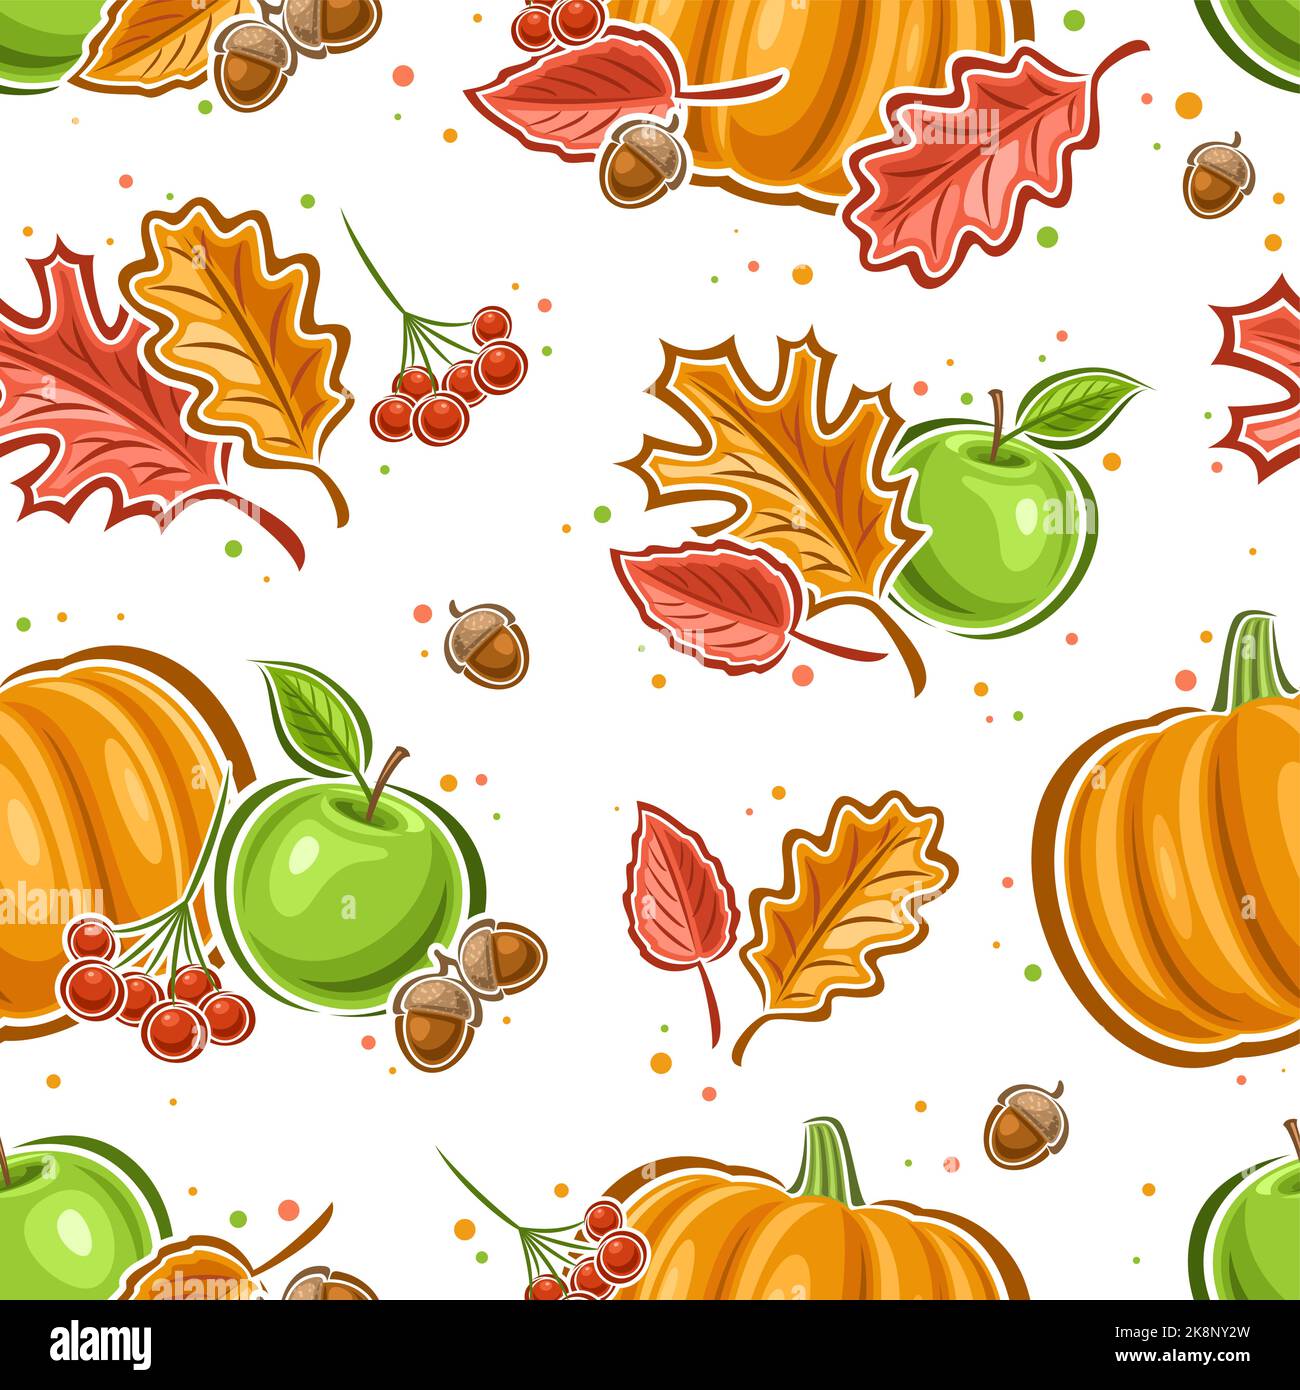 Vektor Thanksgiving Day nahtloses Muster, quadratischer, sich wiederholender Hintergrund mit Illustrationen verschiedener herbstlicher Stillleben-Kompositionen auf weißem Hintergrund Stock Vektor